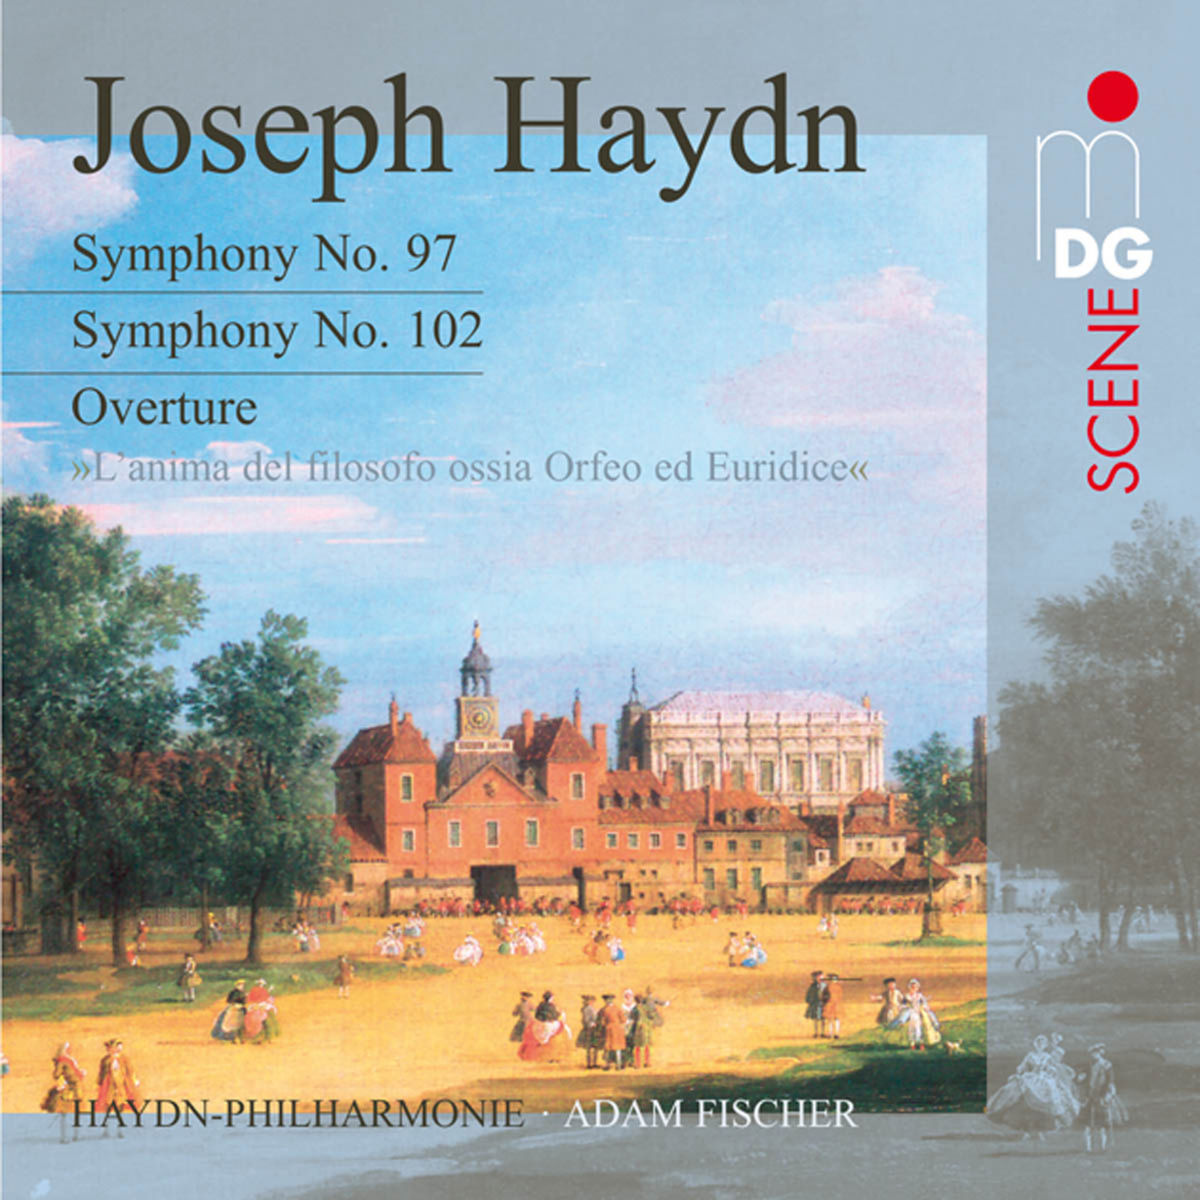 Haydn Philharmonie, Adam Fischer - Haydn: Symphonies No. 97 & 102 (2007) [HDTracks FLAC 24bit/88,2kHz]